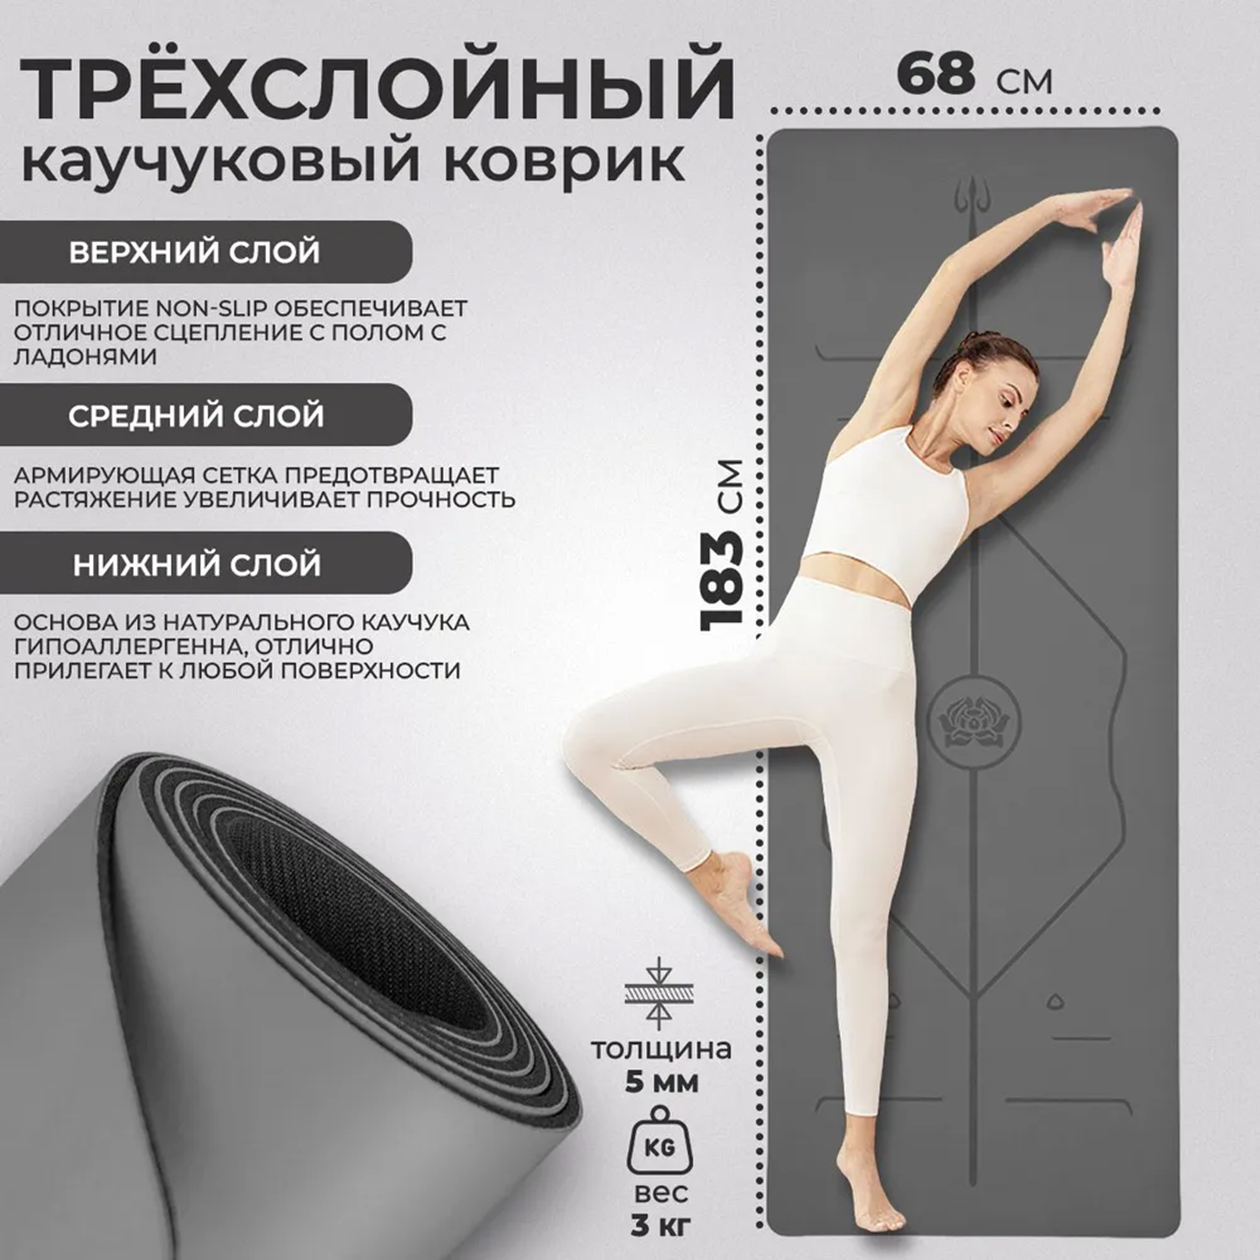 Длины коврика должно хватать для поз с вытянутыми руками и ногами — примерно как на картинке. Источник: ozon.ru